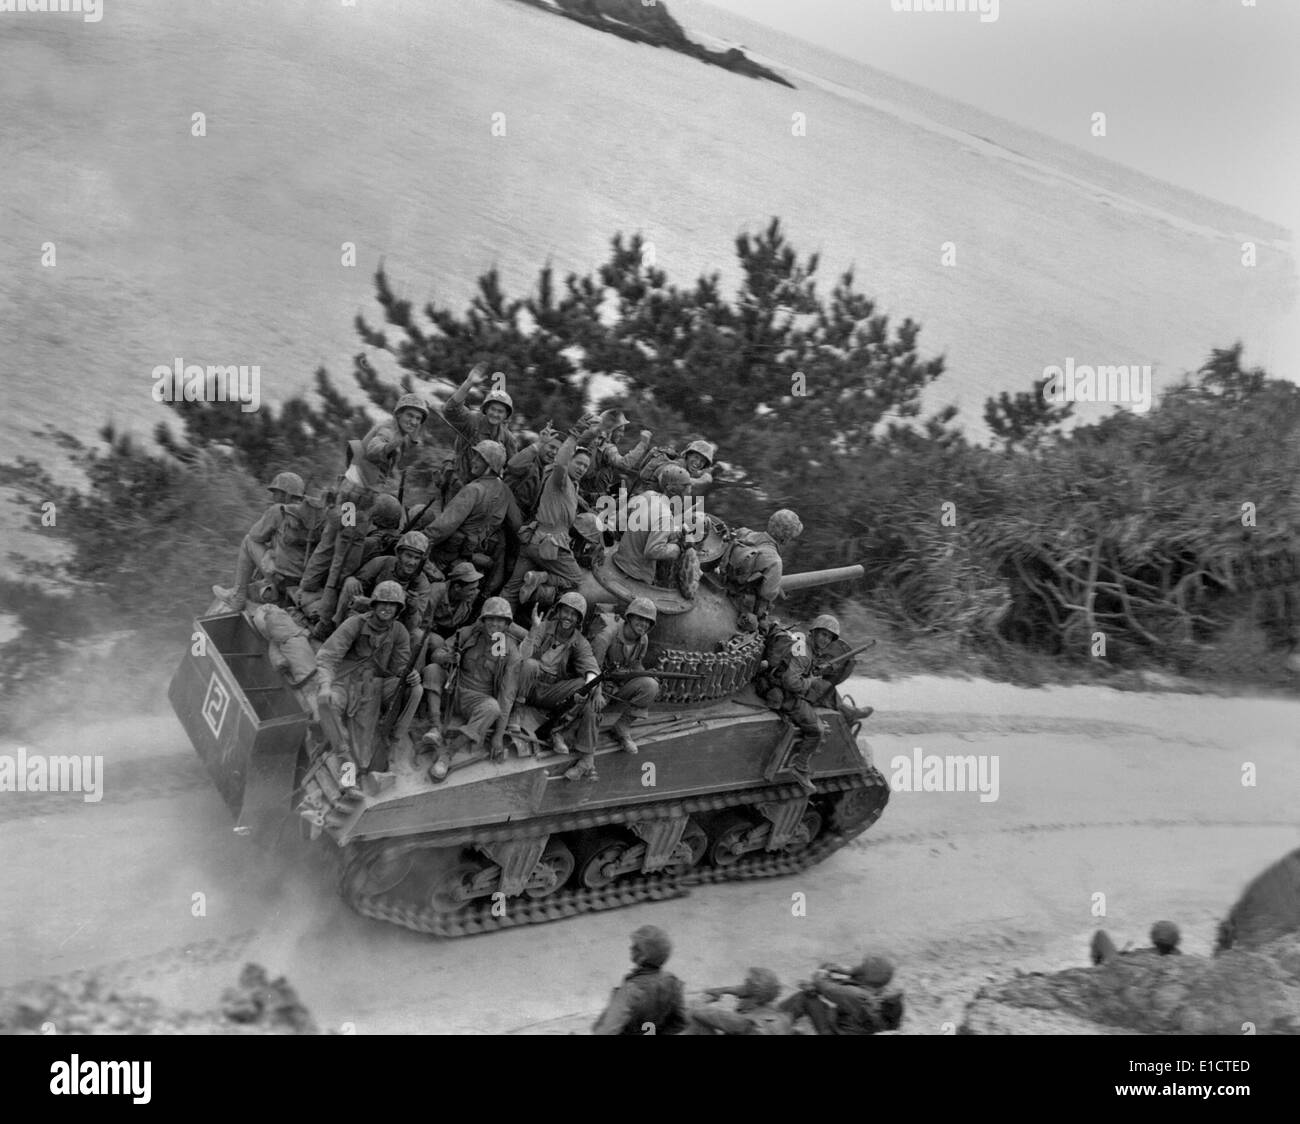 Des soldats de la 29e de marine sur un char Sherman le premier jour de l'invasion d'Okinawa. 1 avril, 1945. Ils s'avancent Banque D'Images